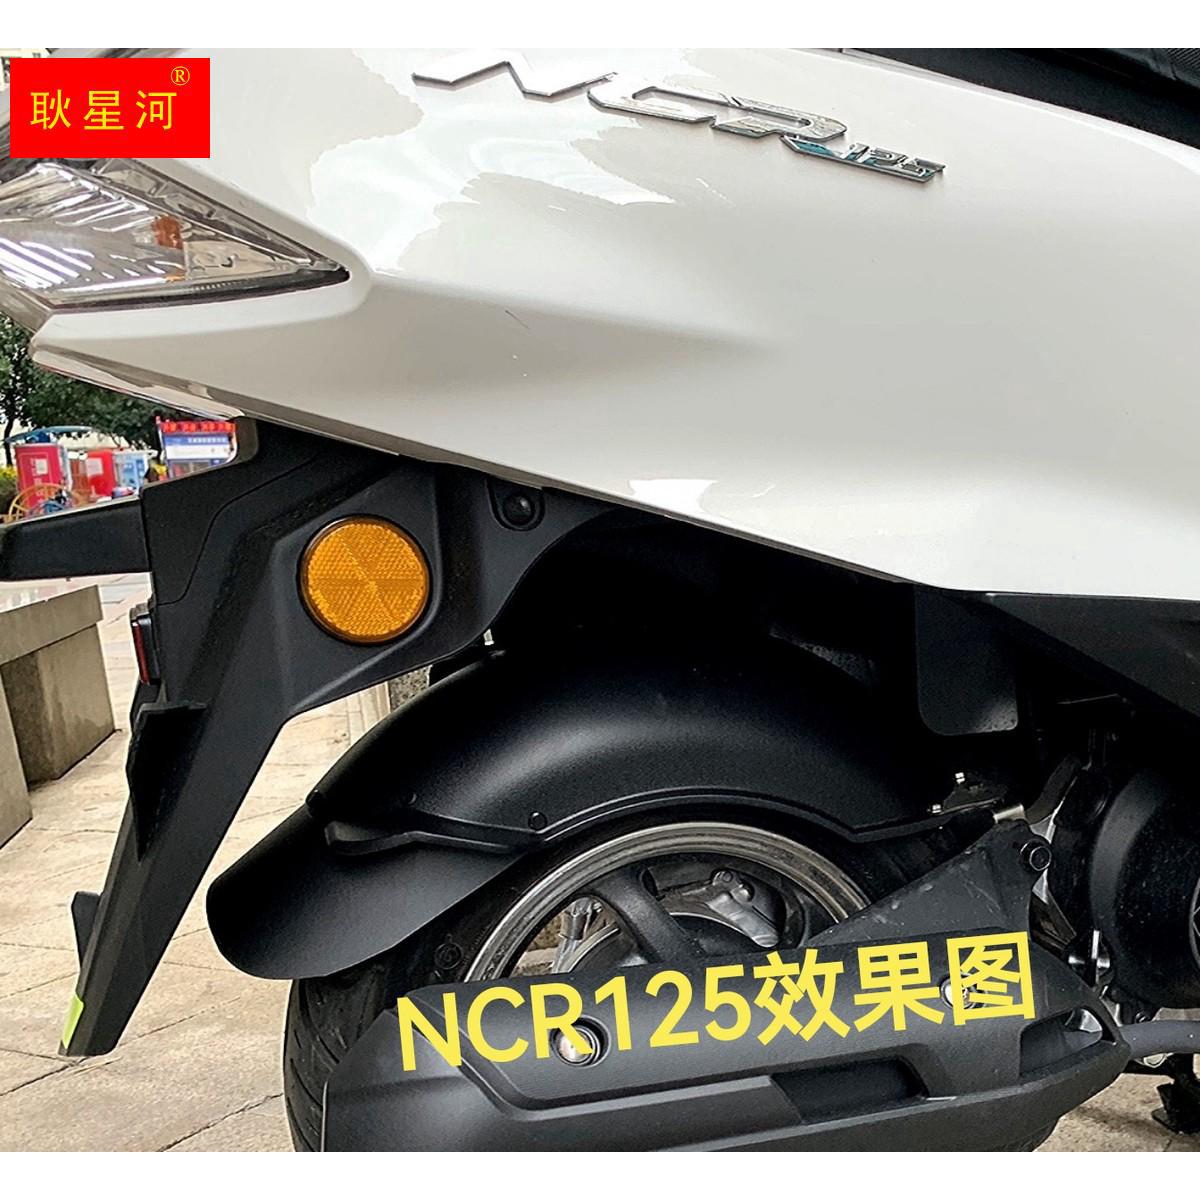 ncr125改装挡泥板scr125喜鲨摩托车改装手把平衡块堵头端子防摔头